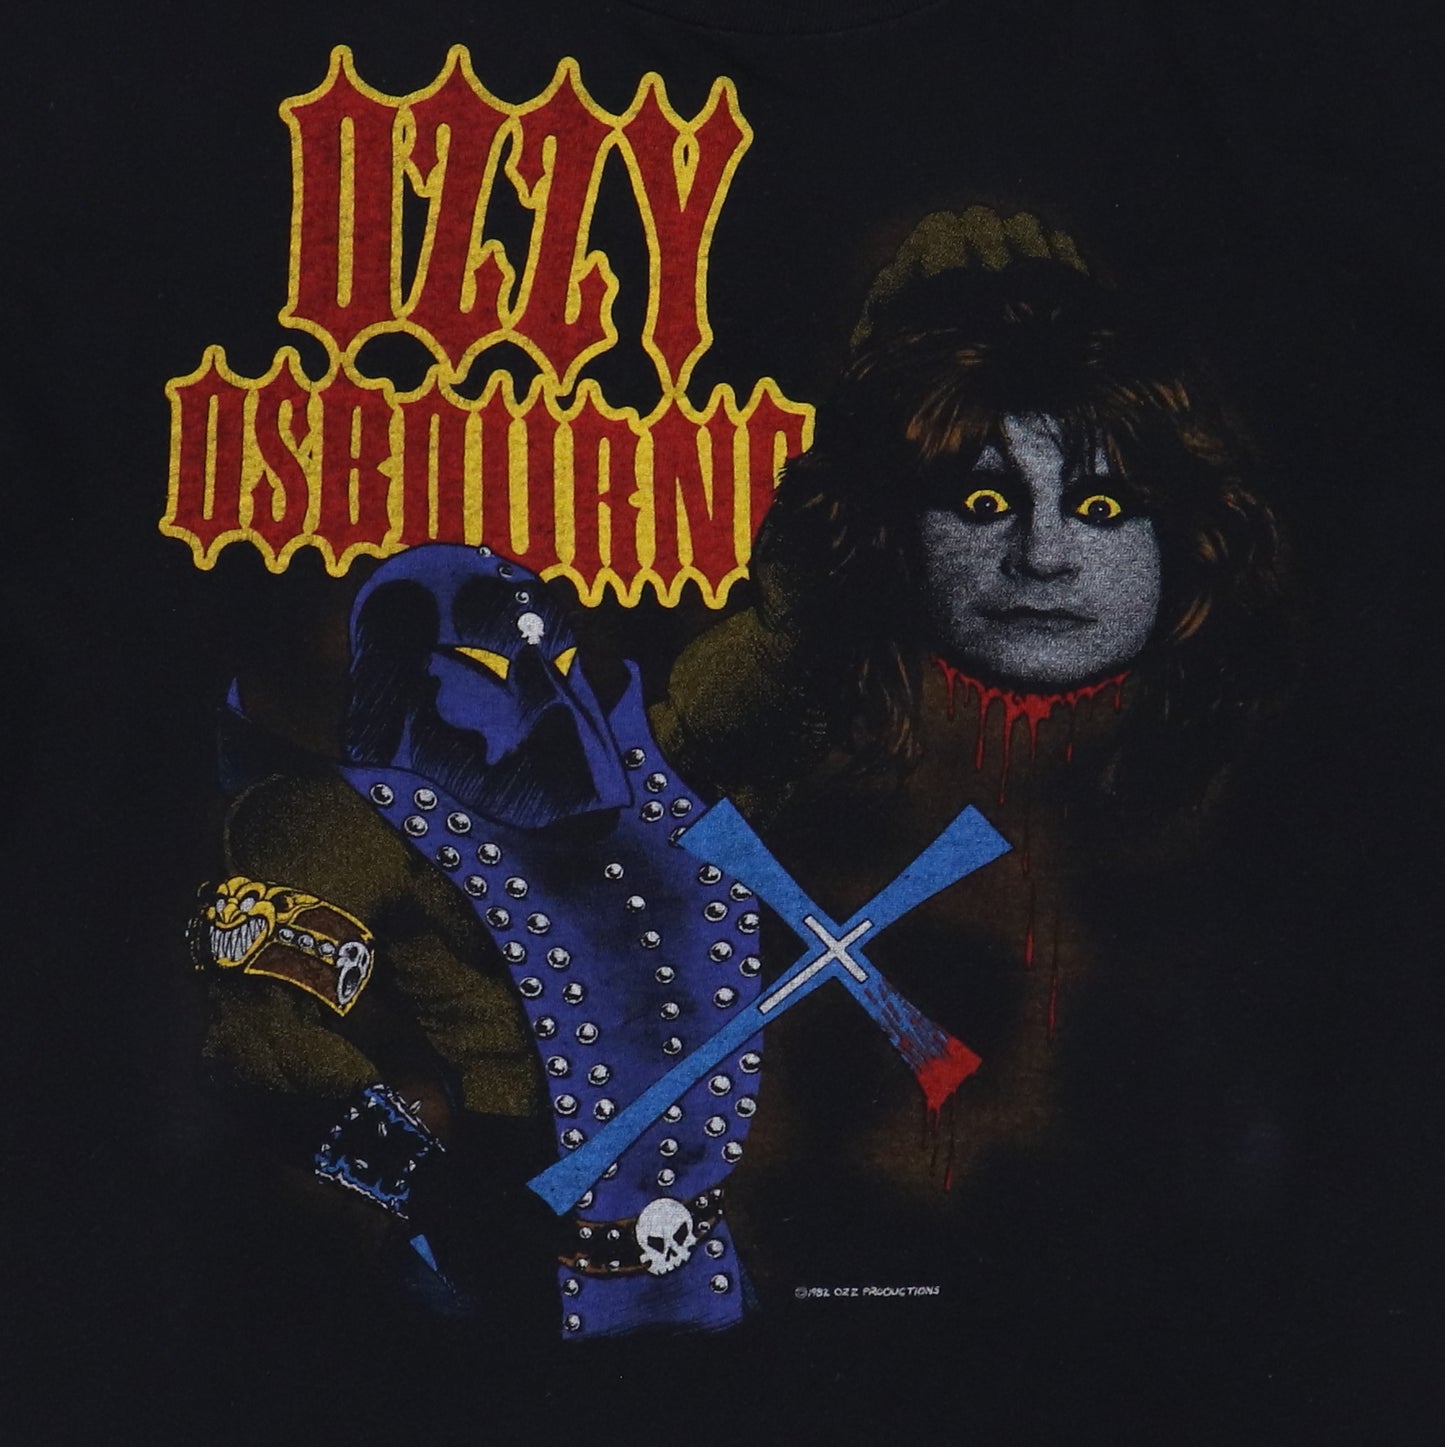 1982 Ozzy Osbourne Decapitation Shirt